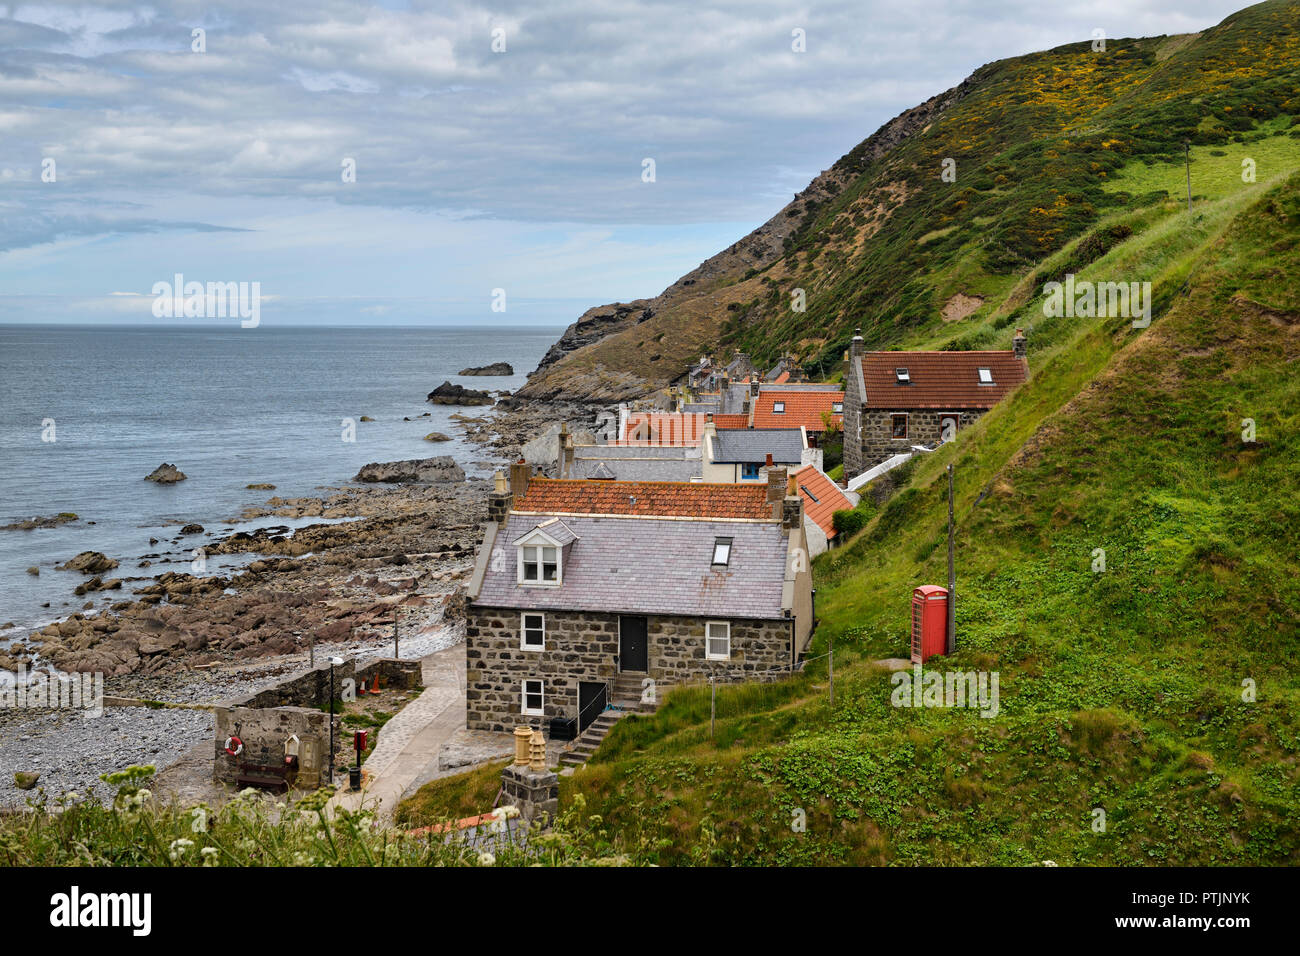 Einzelne Zeile von Häusern der Crovie Küstenfischerei Dorf auf Gamrie Bucht Nordsee Aberdeenshire Schottland Großbritannien mit roten Telefonzelle Stockfoto